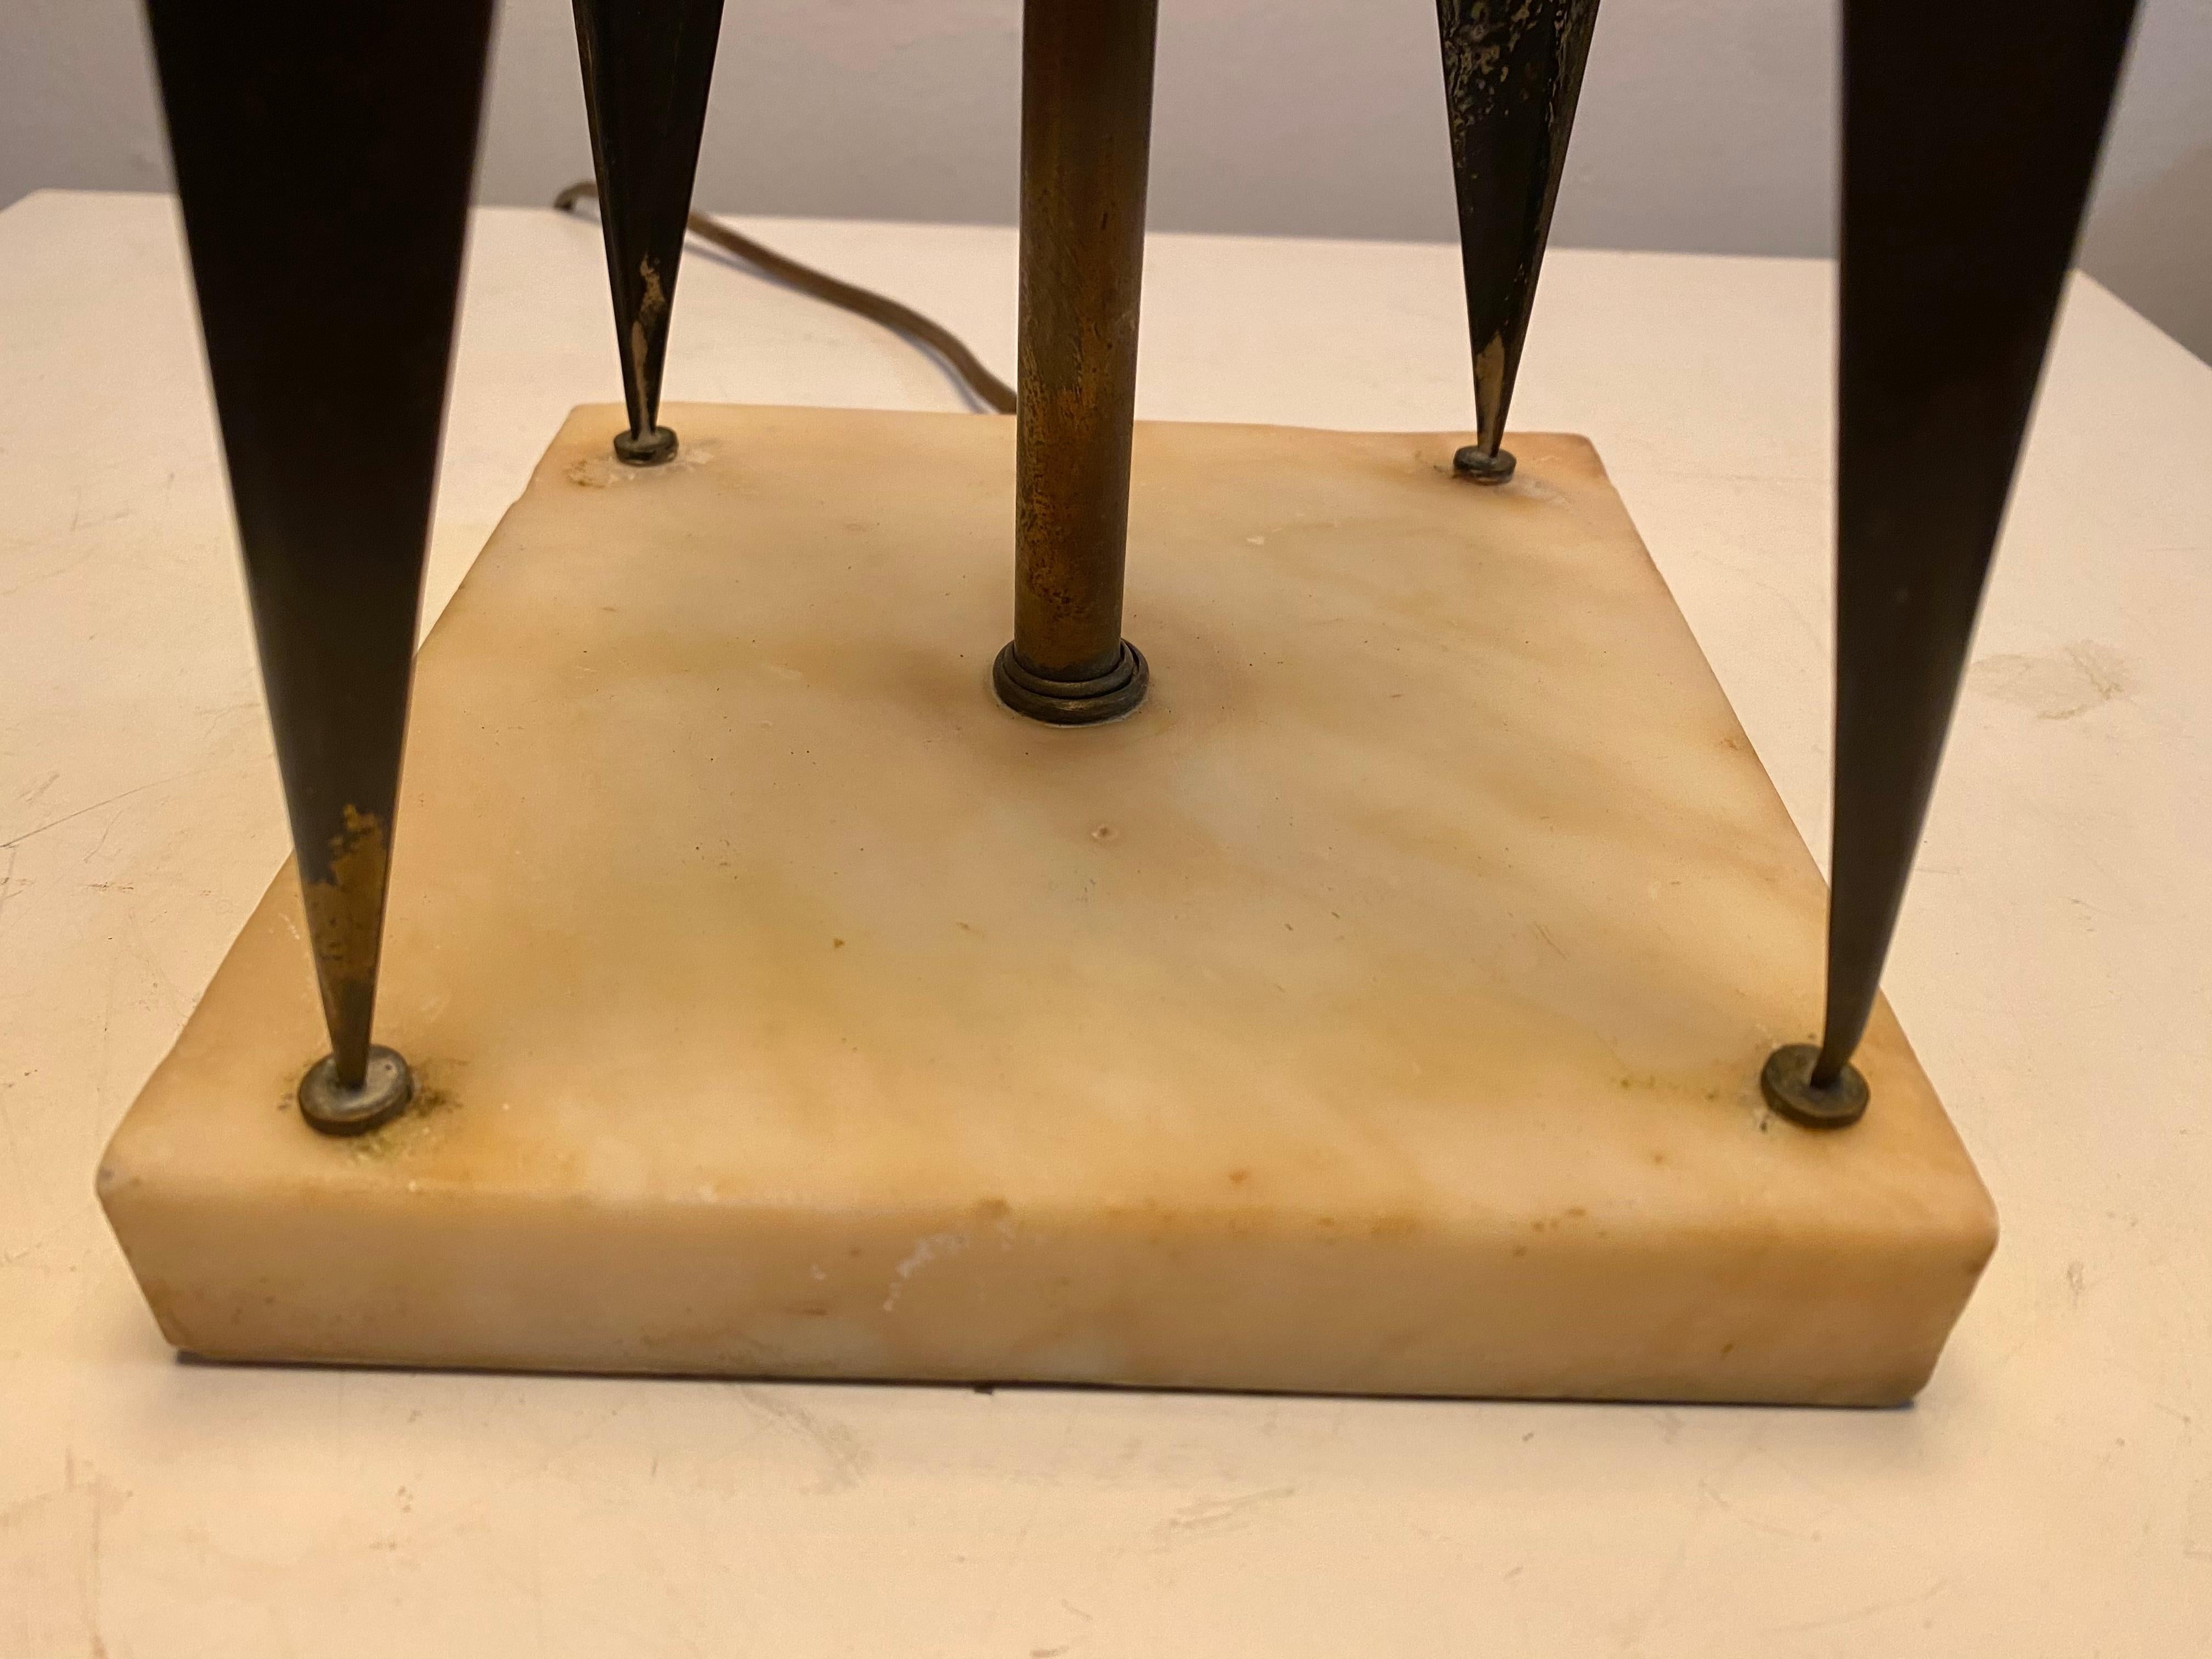 Lampe de table angulaire en laiton du futuriste Maurizio Tempestini avec base en travertin. Structure haute en forme de cerf-volant en laiton patiné sur une base en travertin. Diagonale. Architectural. Rareté. 24H jusqu'au sommet de la